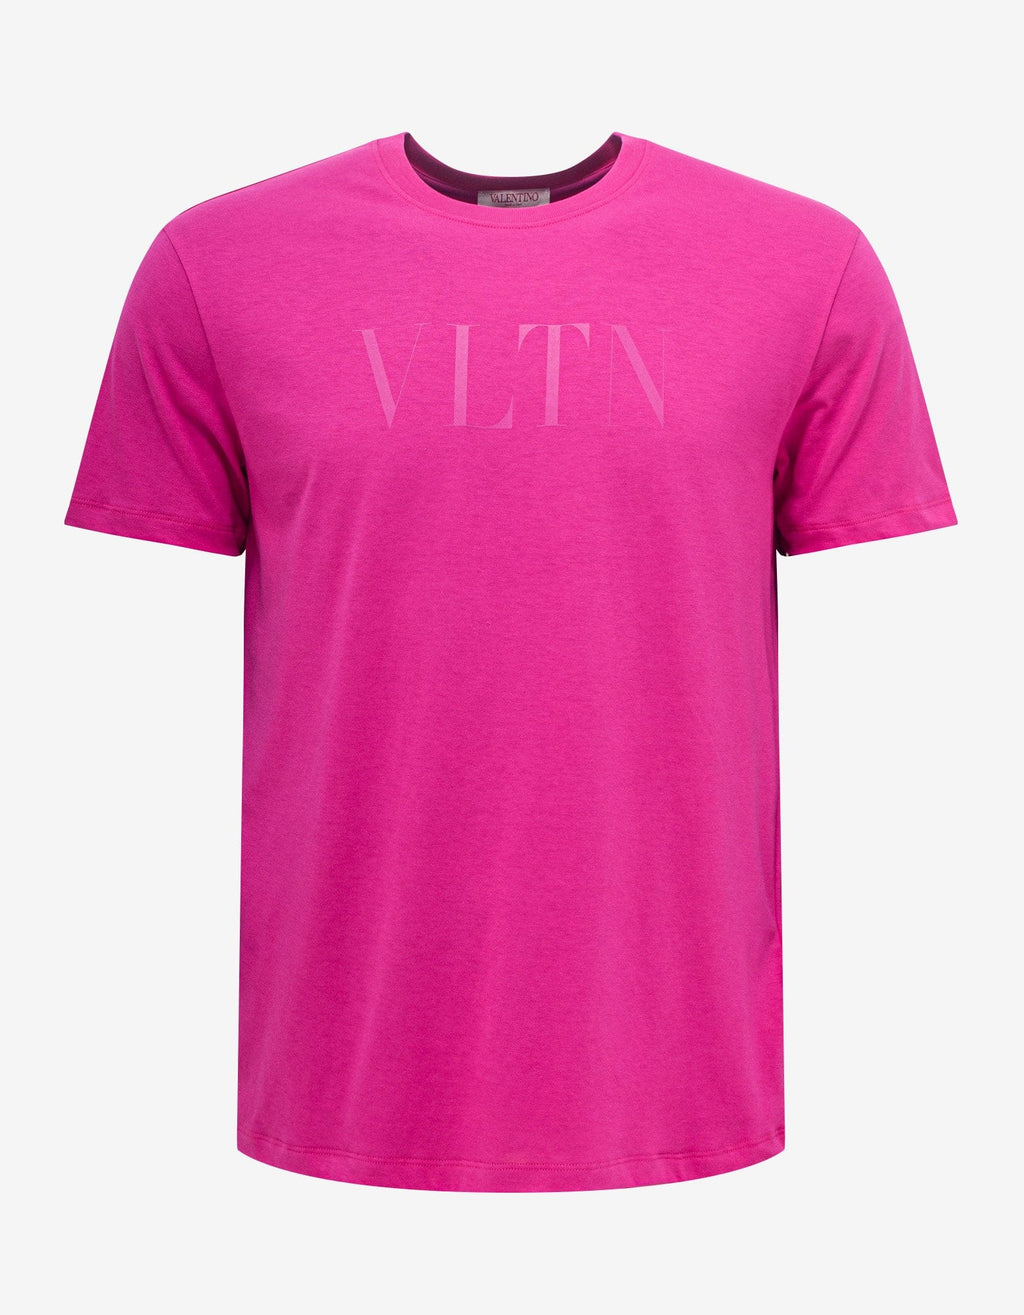 Valentino Valentino Pink VLTN Print T-Shirt